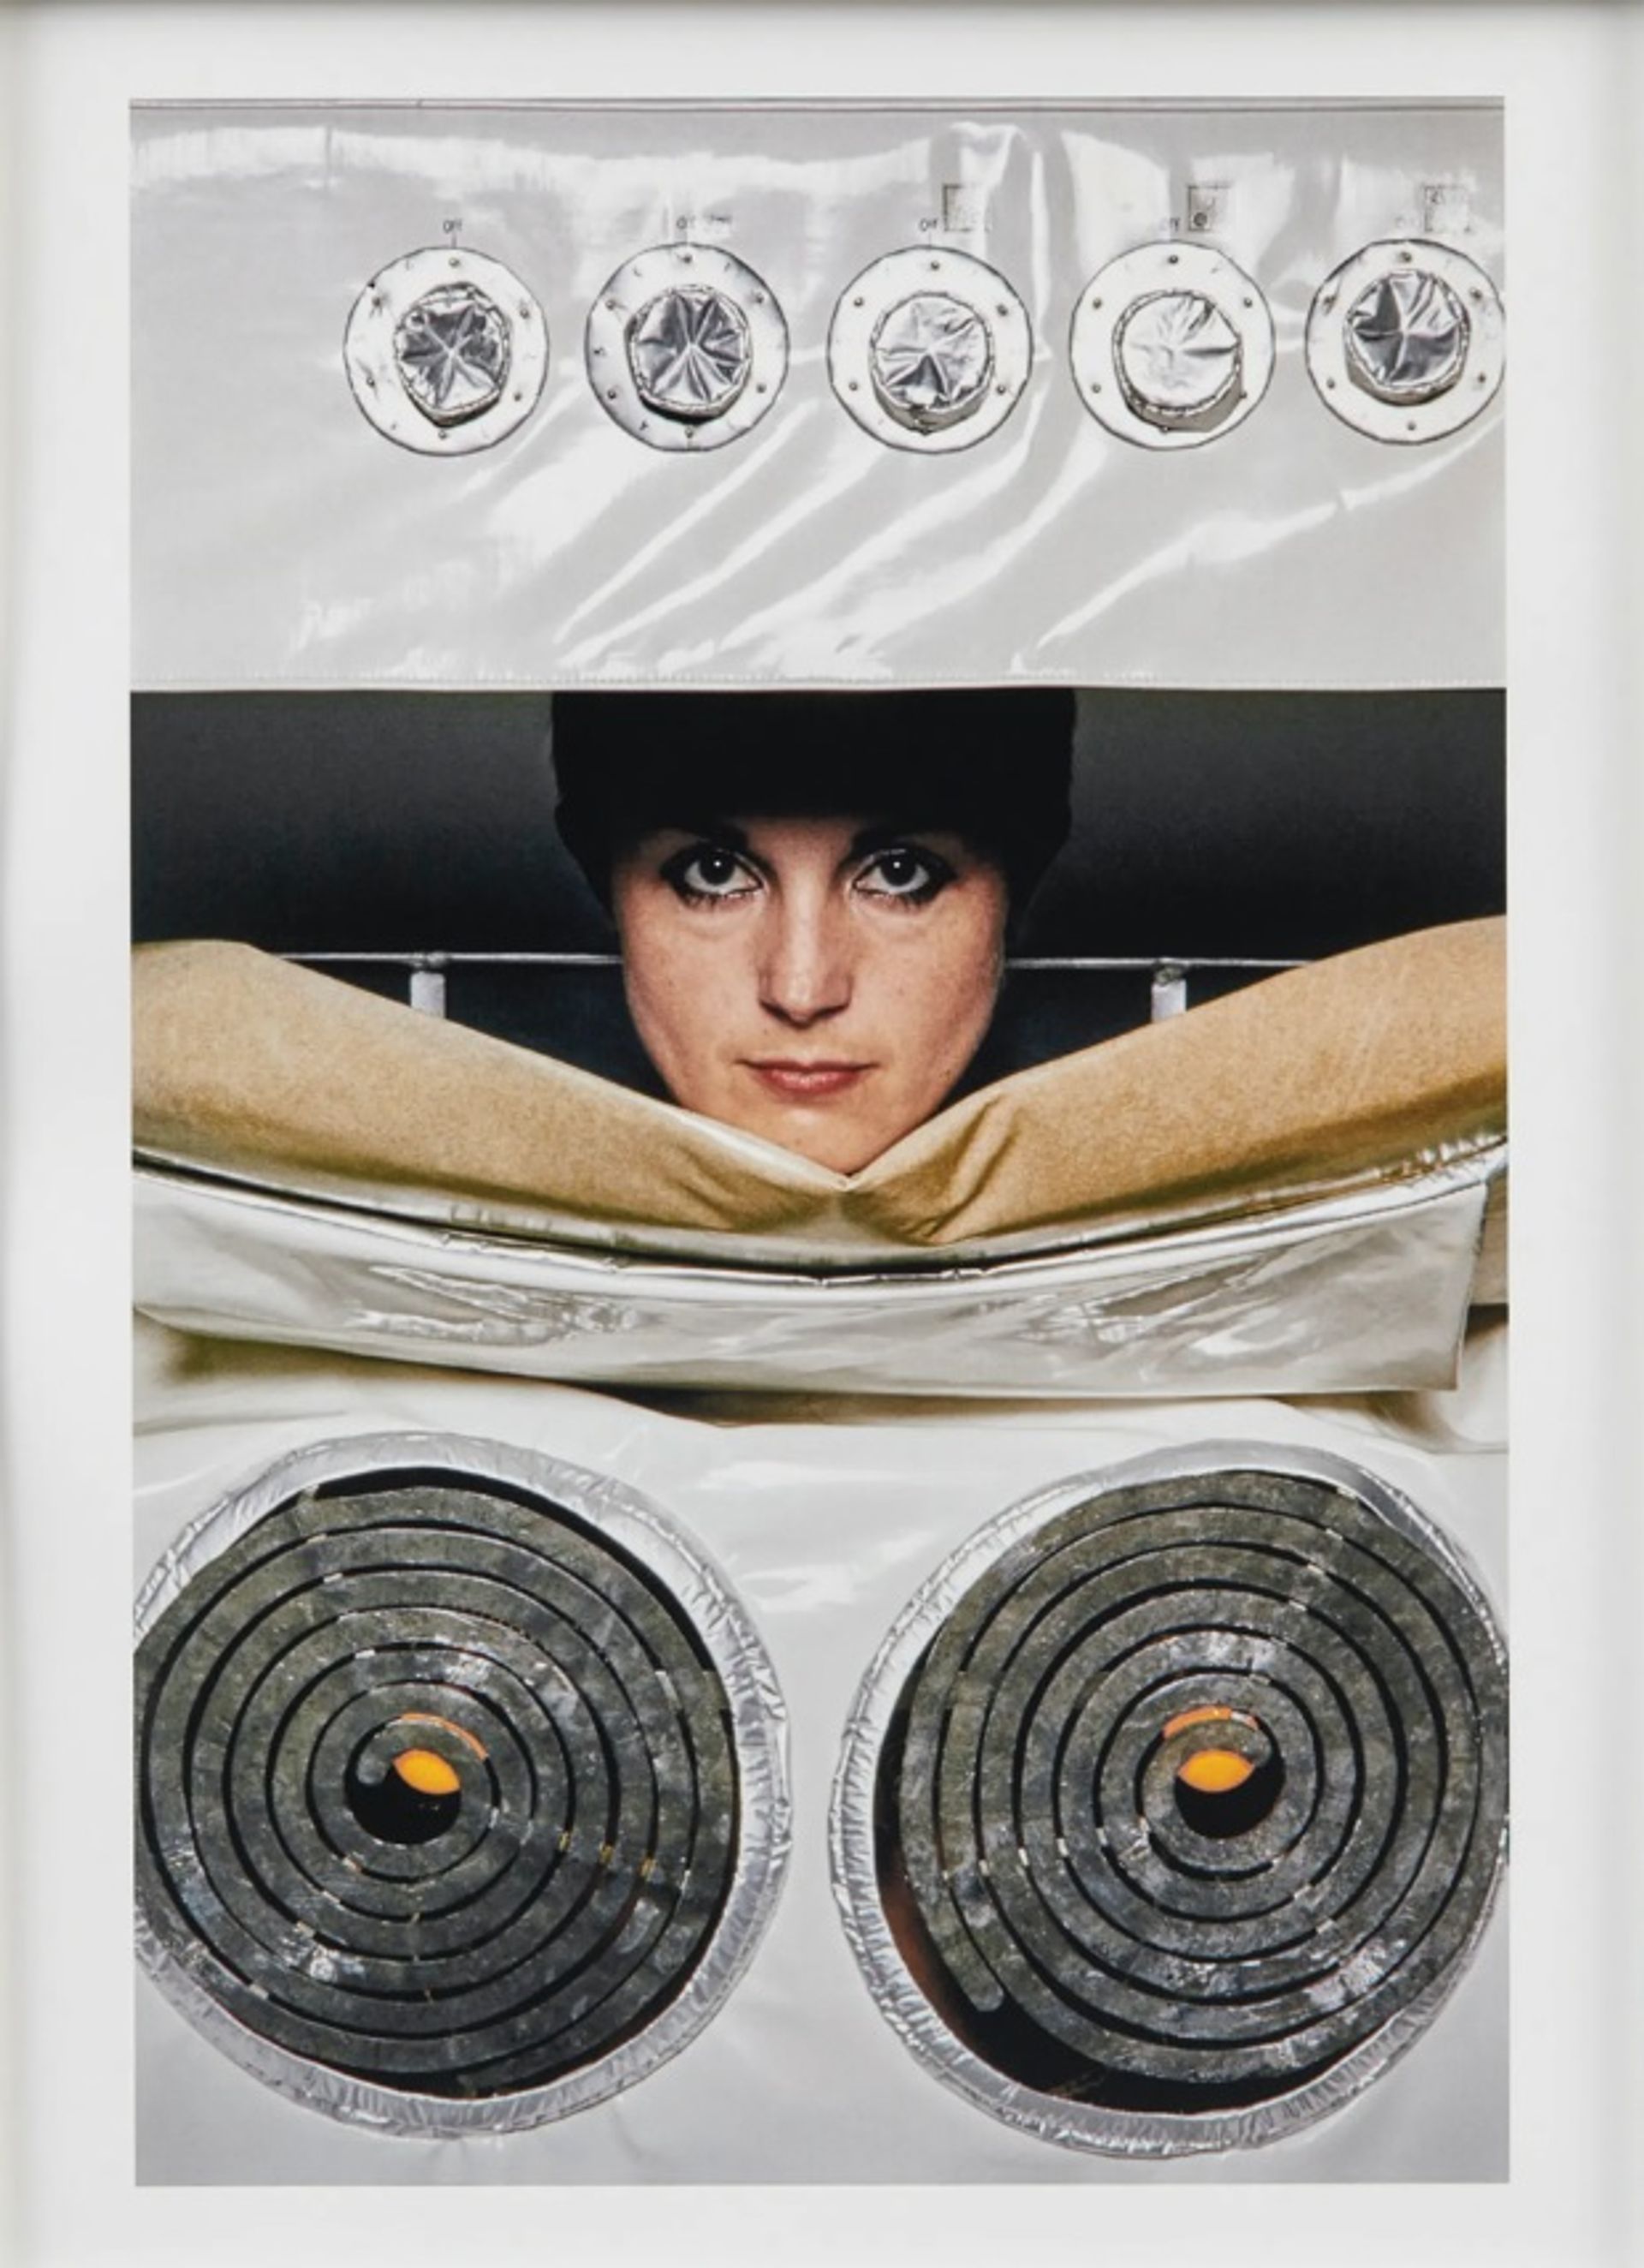 "מרד הומוריסטי נגד עבודות הבית": הופעתה של הלן צ'דוויק משנת 1977, 'במטבח (תנור)'

© העזבון של הלן צ'דוויק; באדיבות גלריית ריצ'רד סאלטון